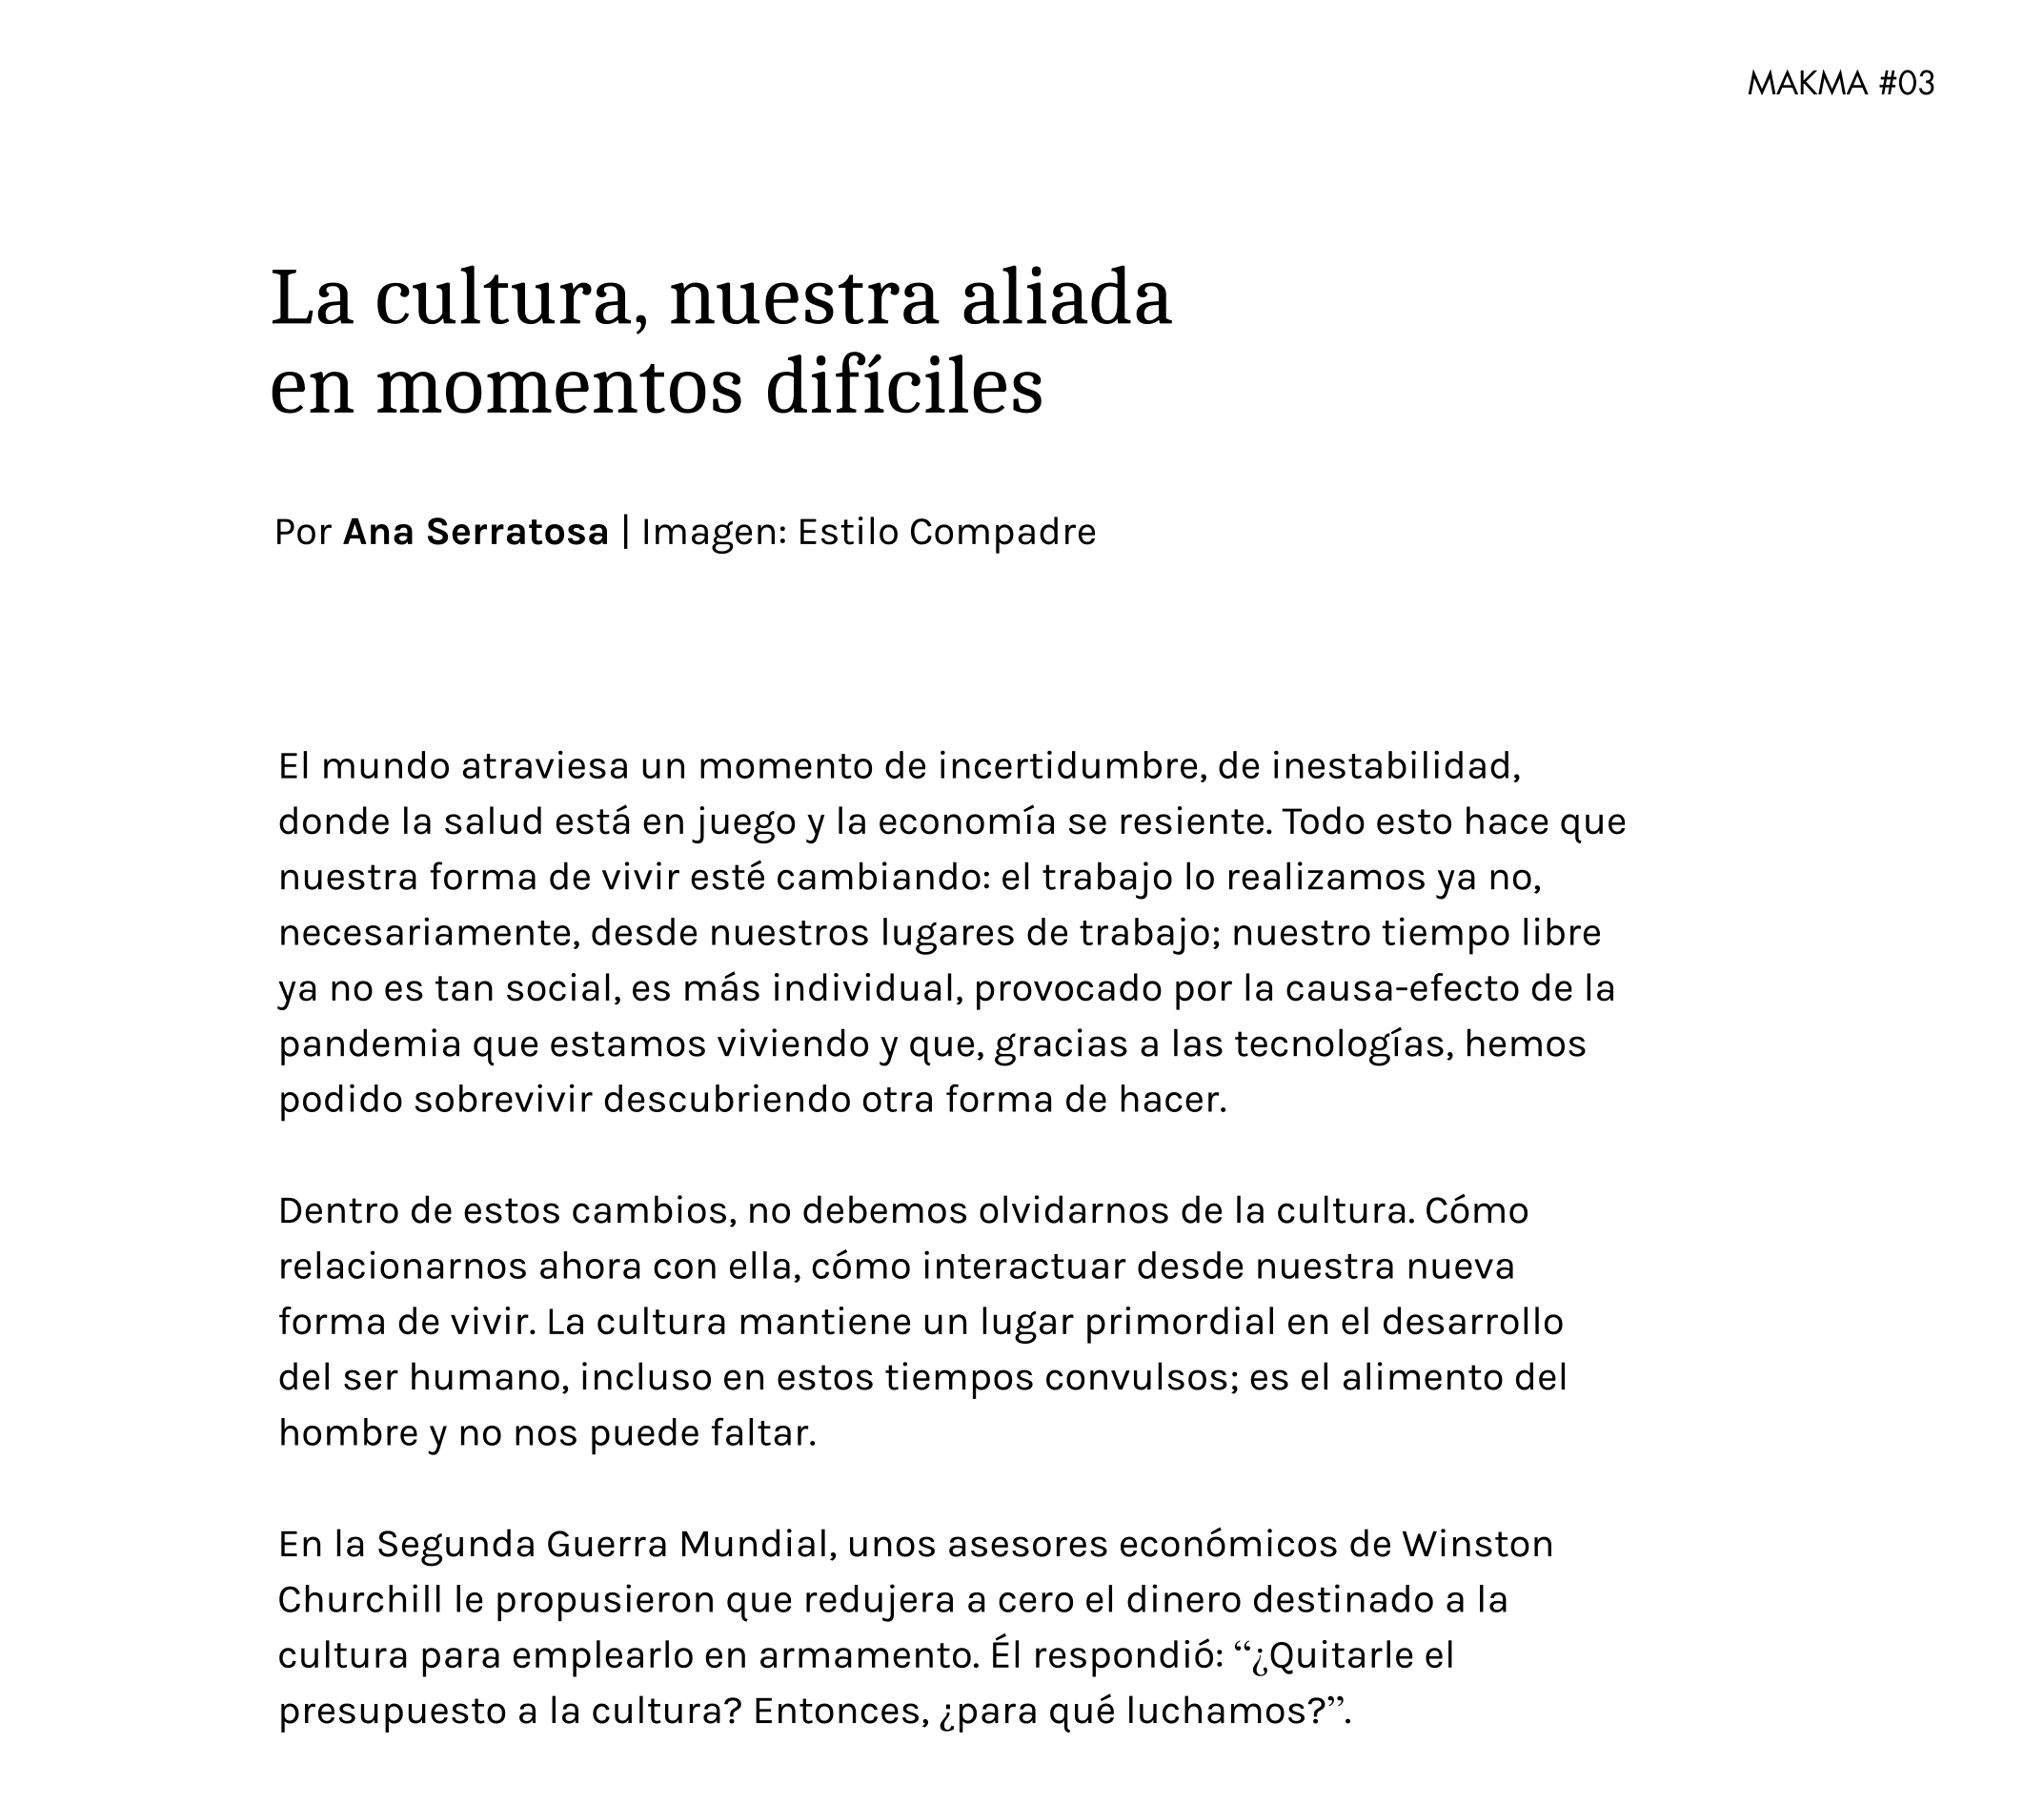 La cultura, nuestra aliada en tiempos difíciles - Revista Makma #3 - Galeria Ana Serratosa 